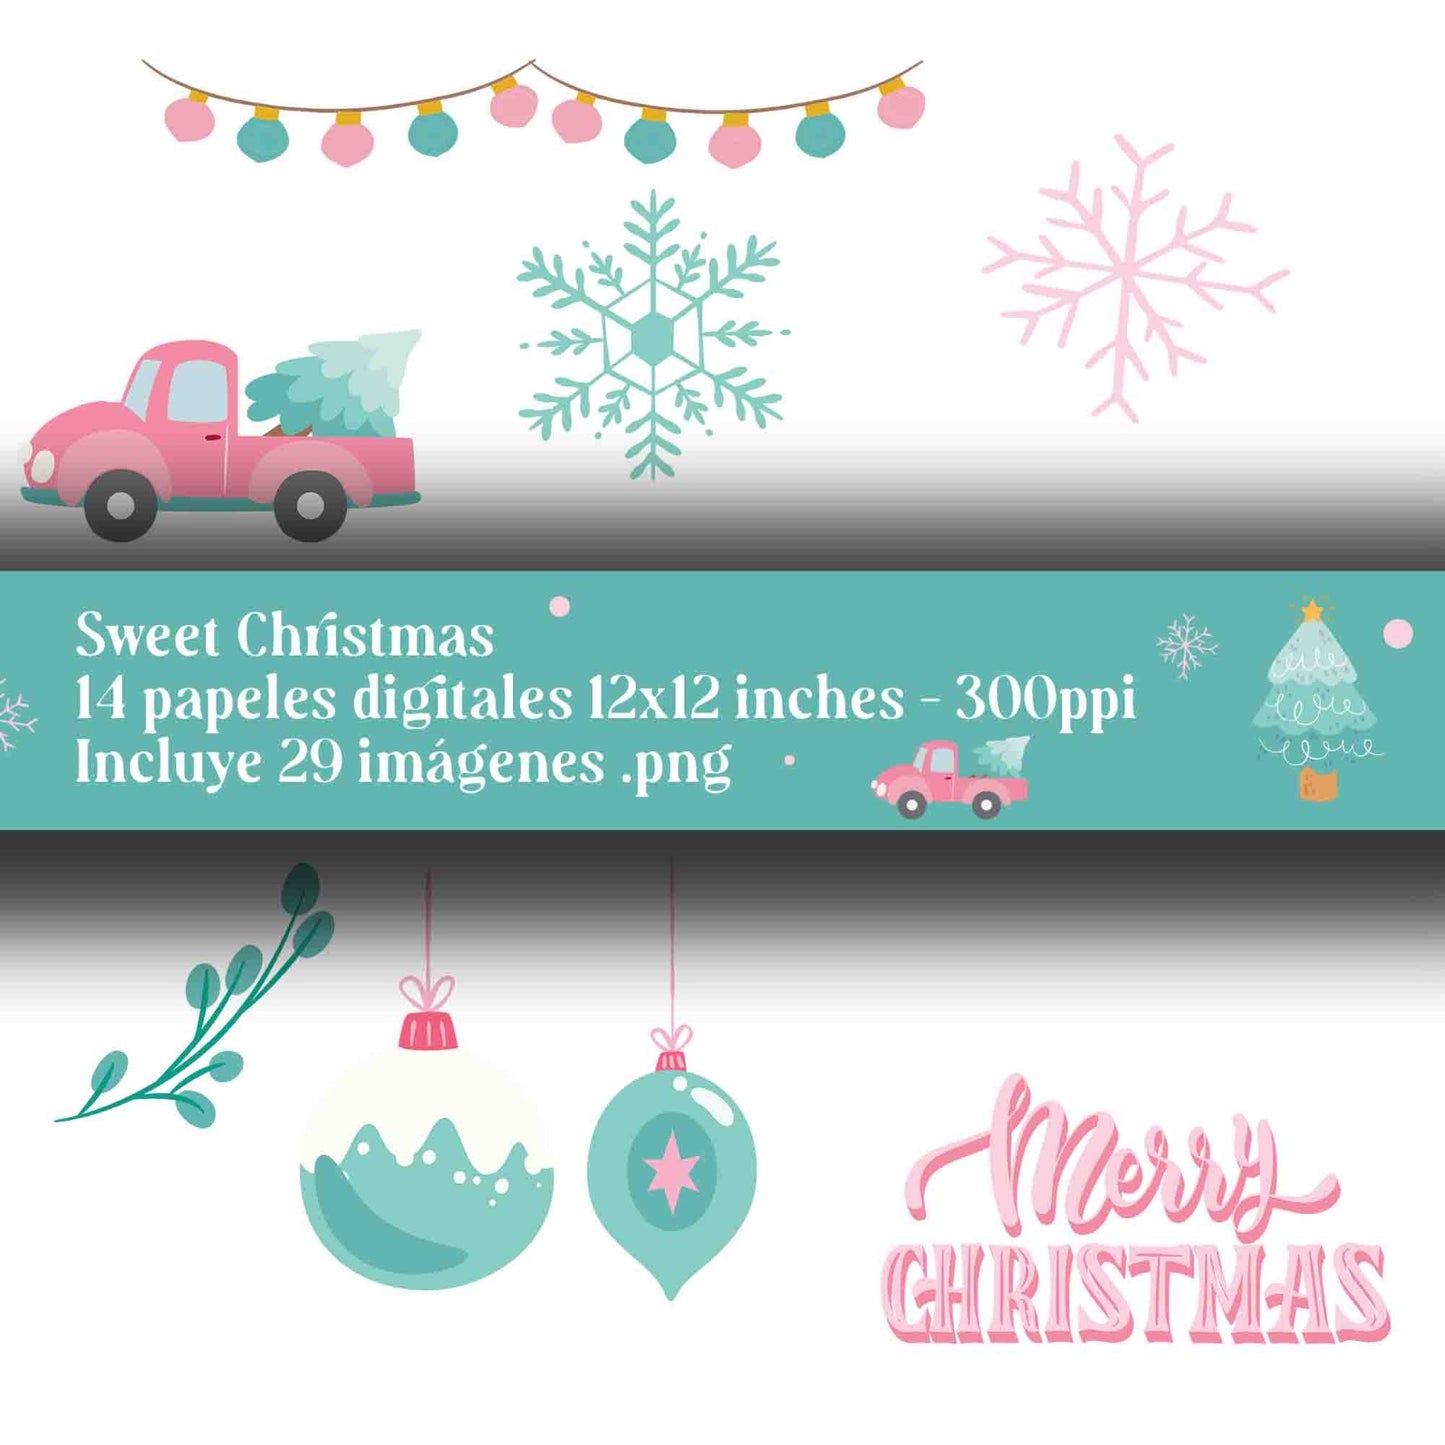 Sweet Christmas Digital Paper